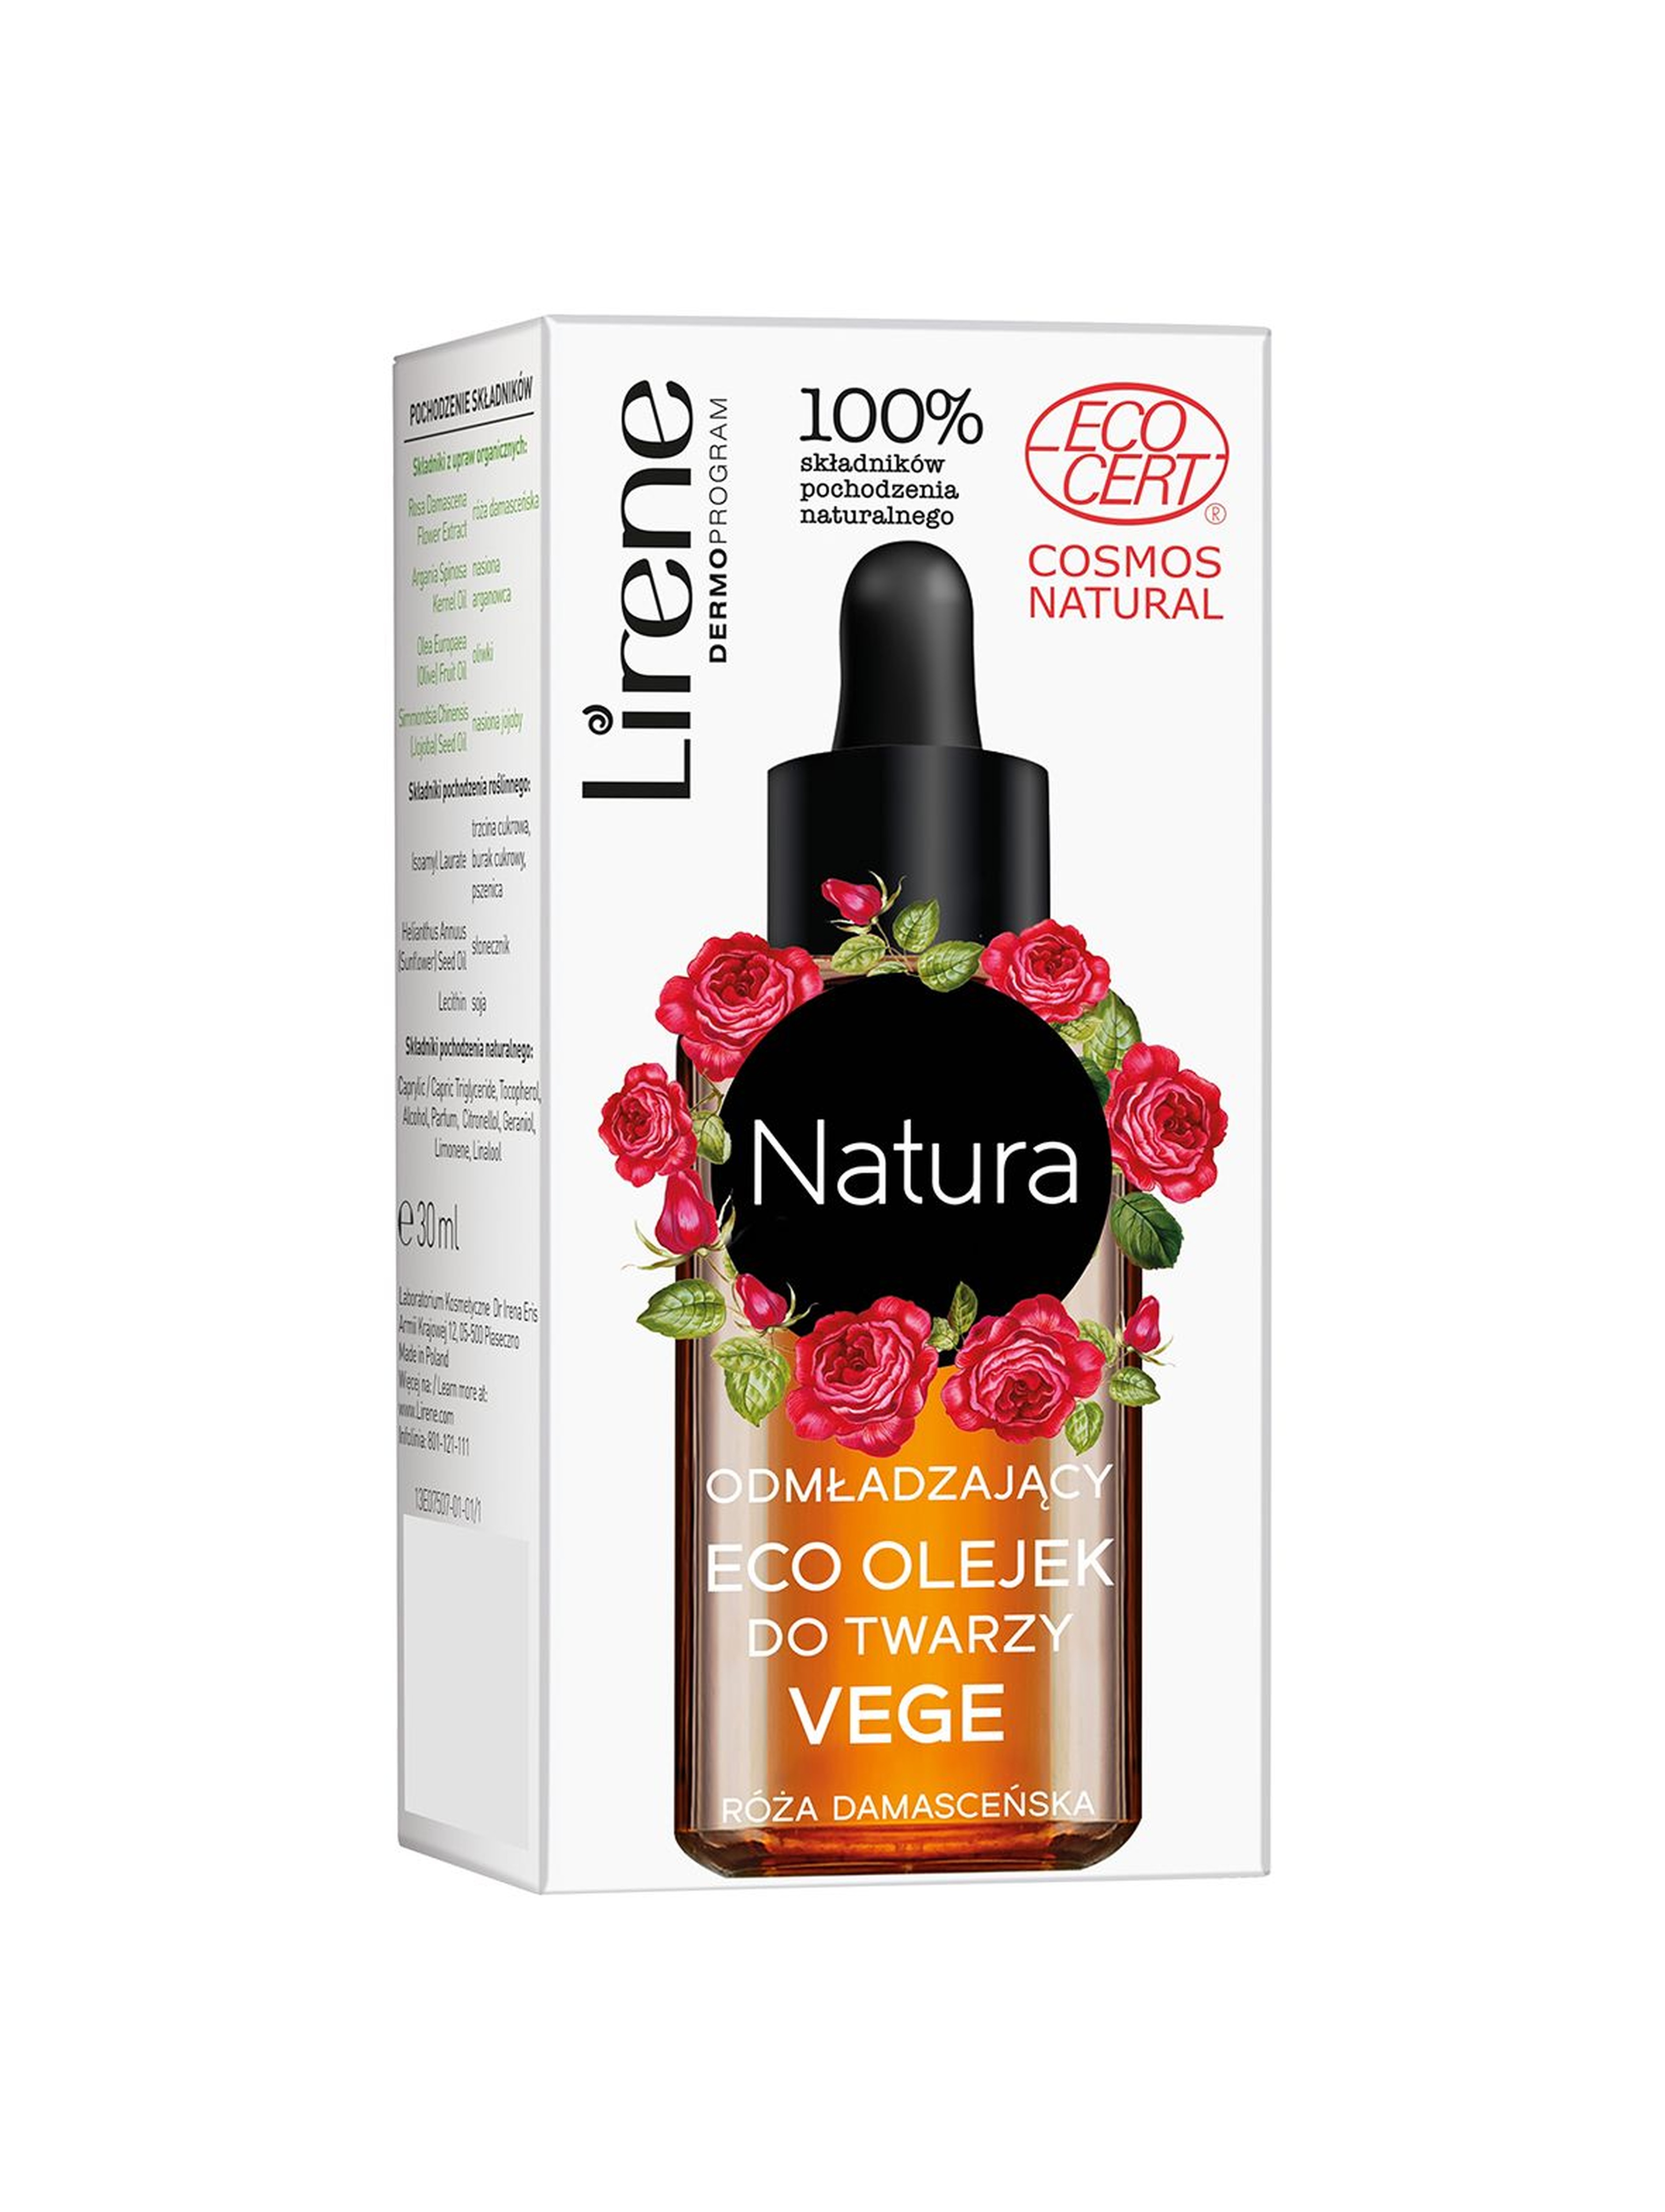 Lirene Natura Odmładzający eco olejek do twarzy vege 30 ml